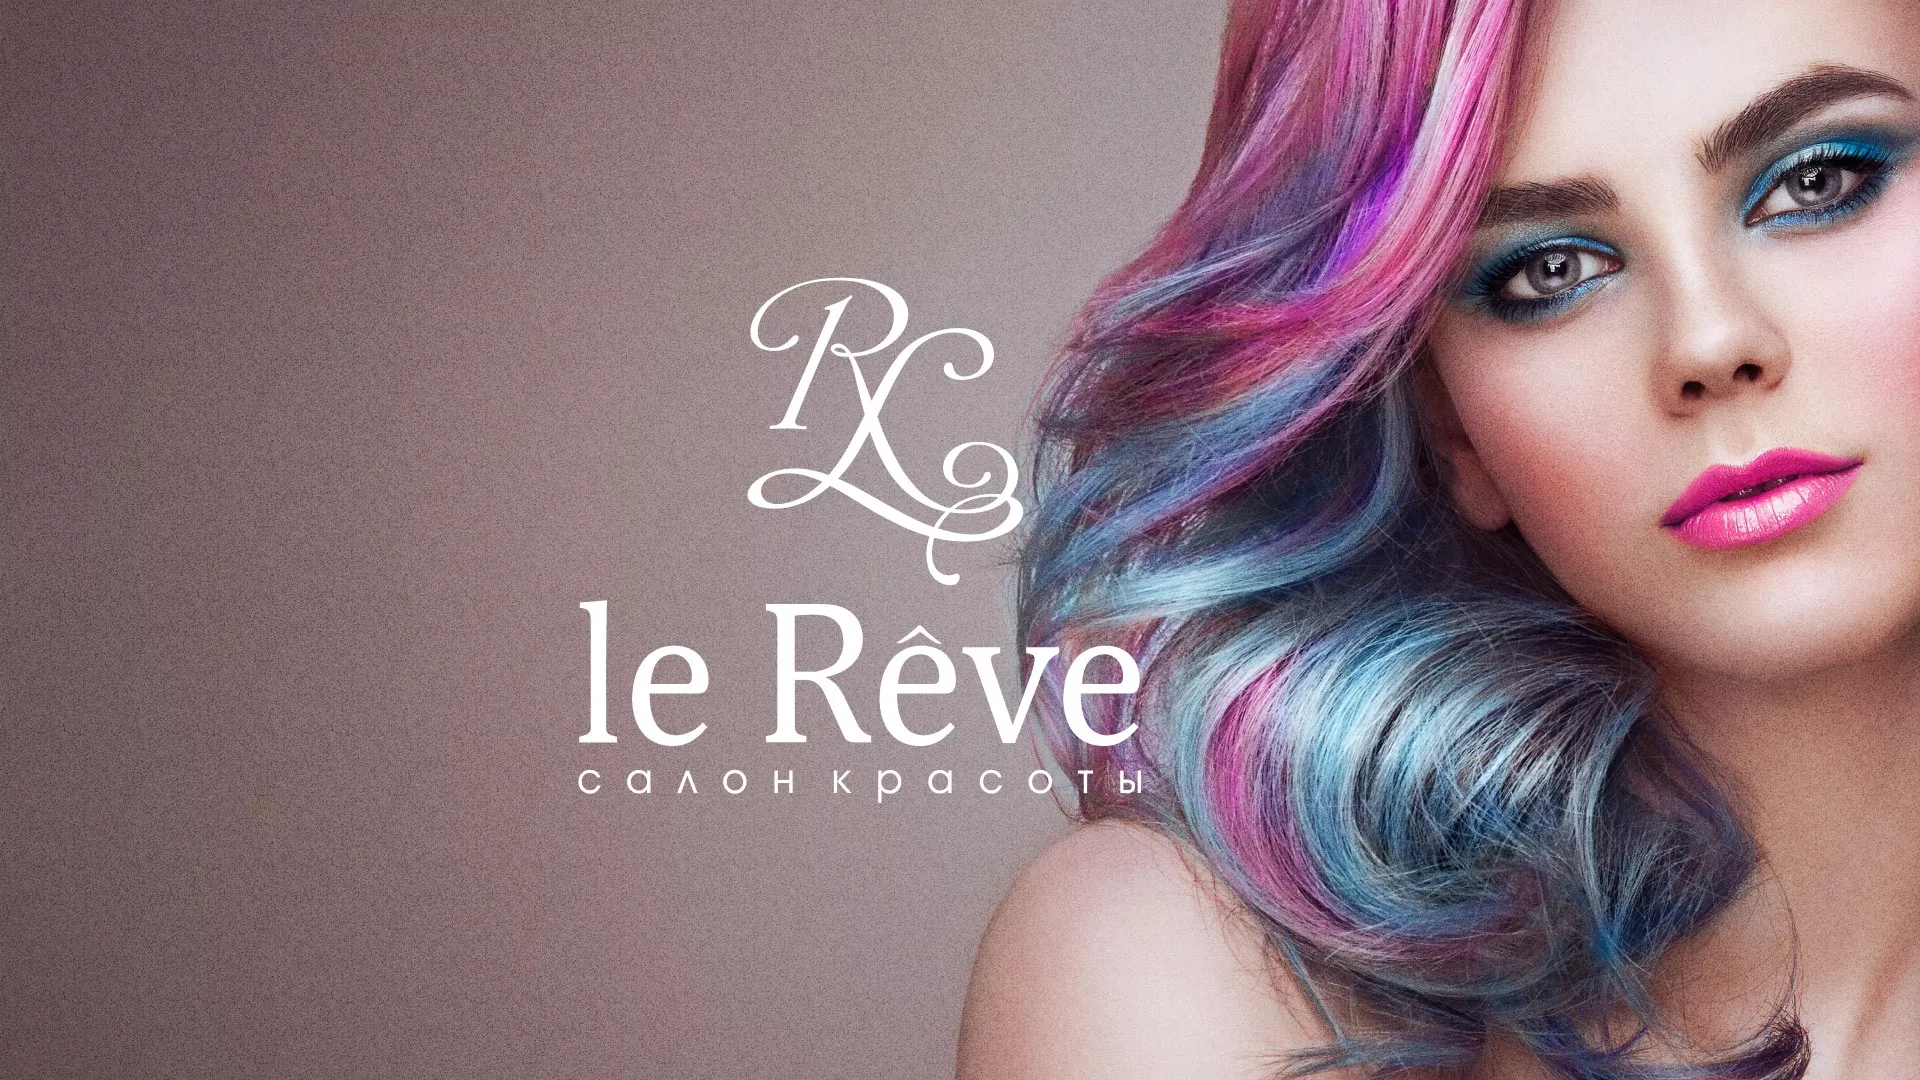 Создание сайта для салона красоты «Le Reve» в Александрове